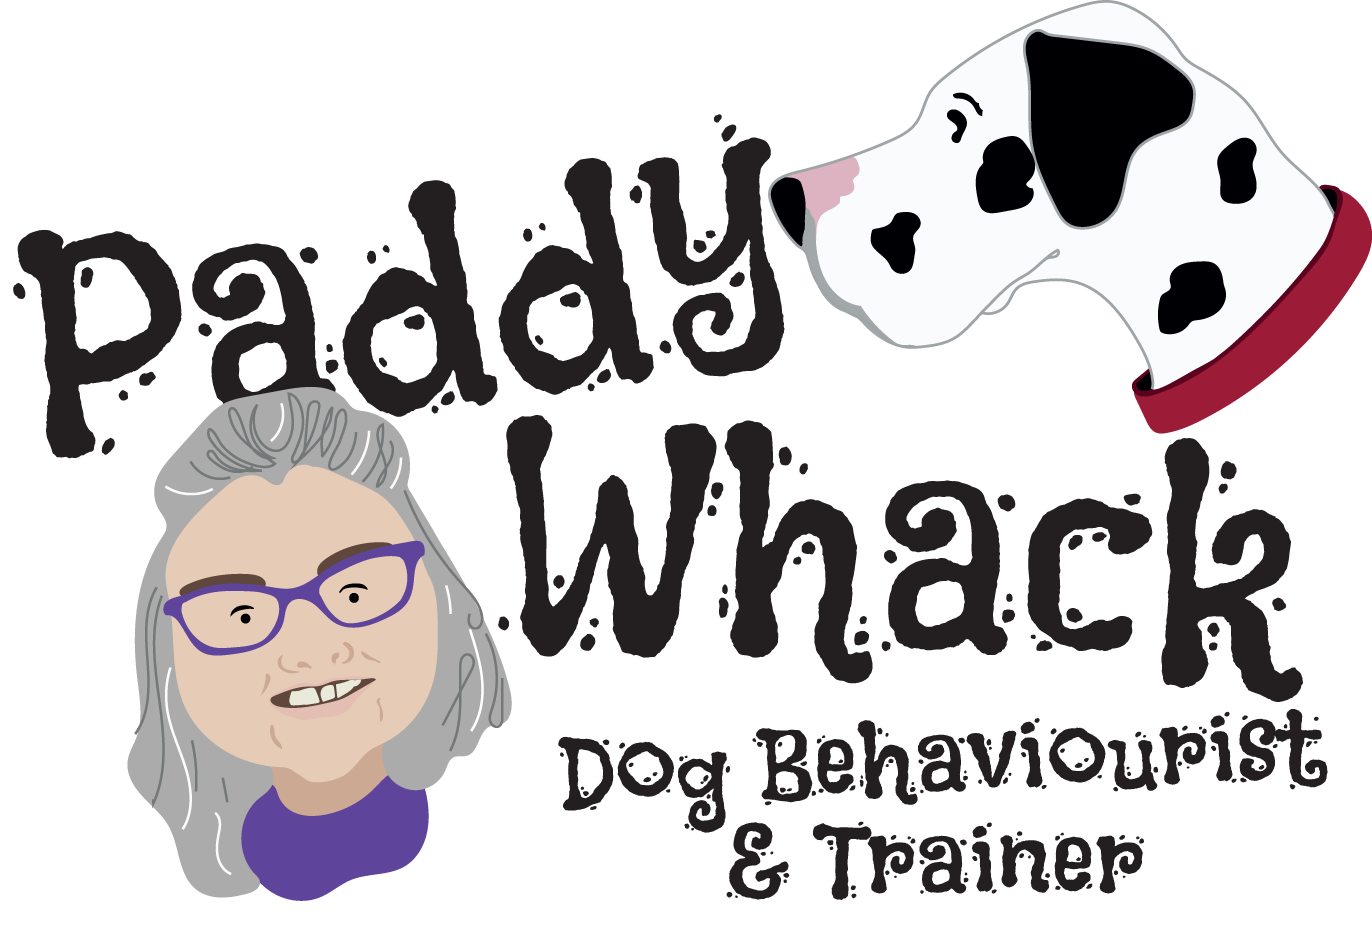 Paddy Whack Dog Training